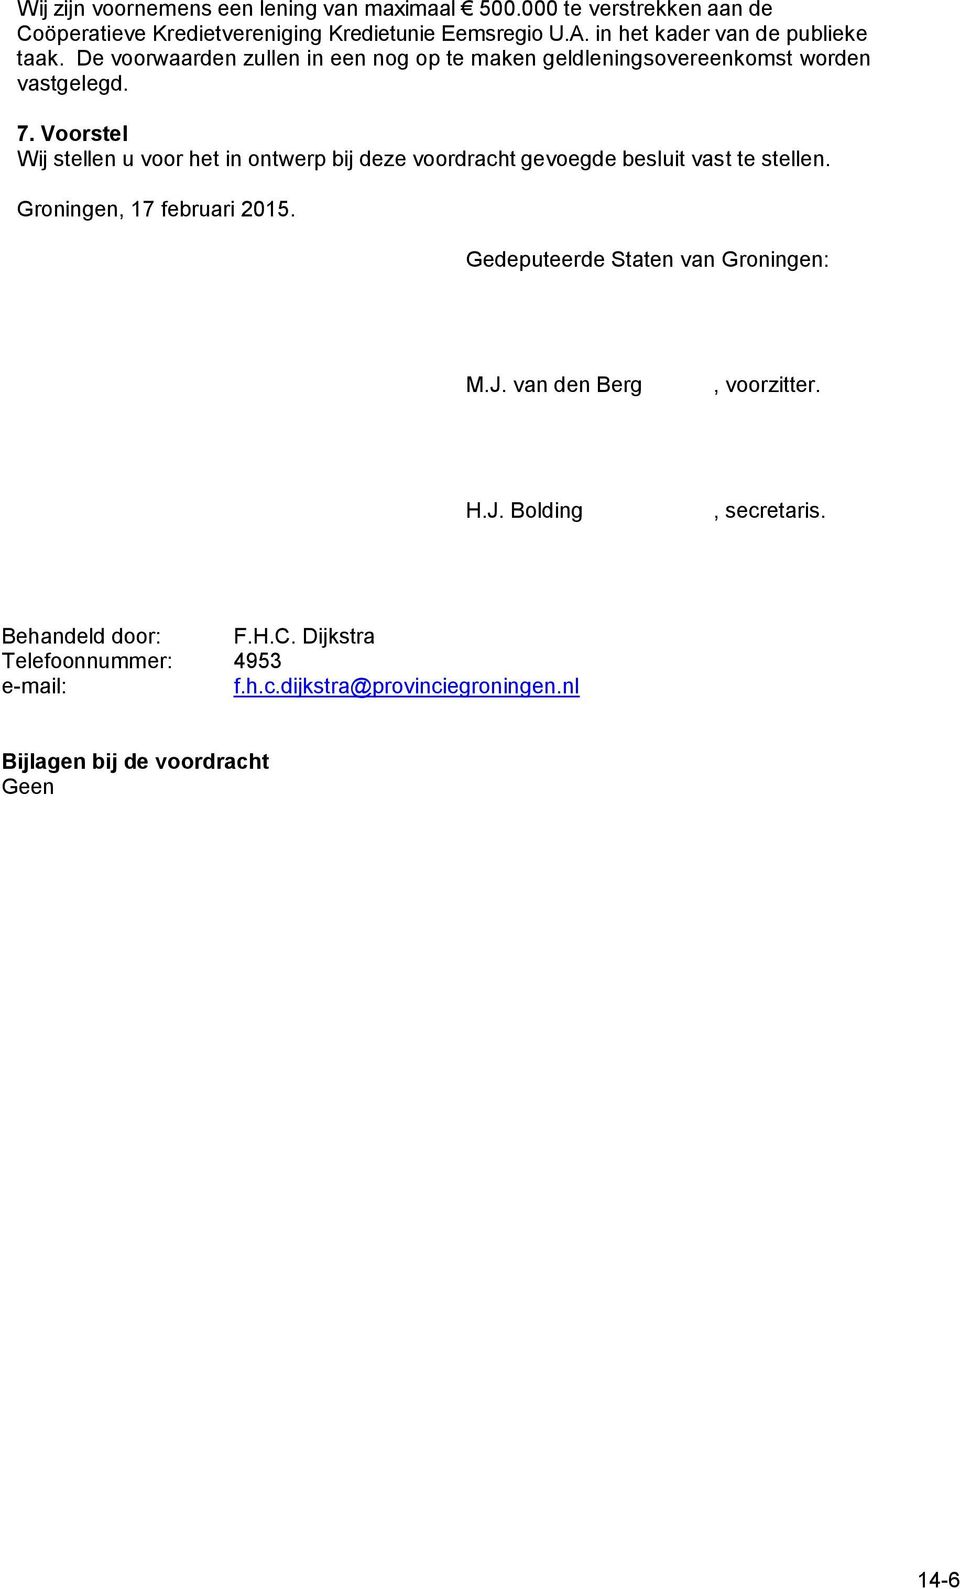 Voorstel Wij stellen u voor het in ontwerp bij deze voordracht gevoegde besluit vast te stellen. Groningen, 17 februari 2015.